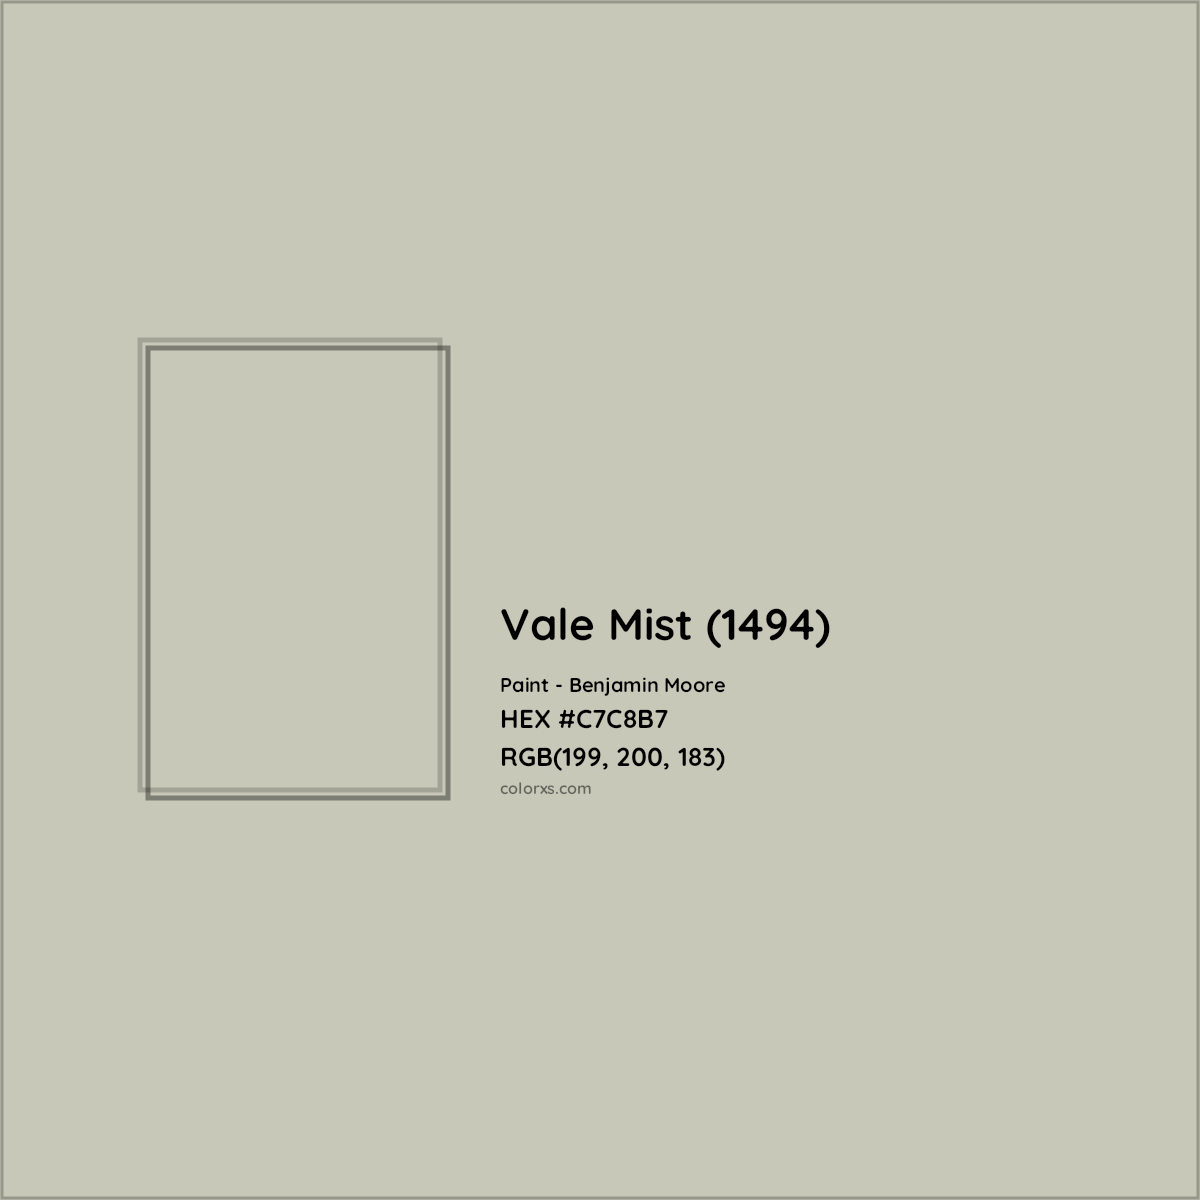 HEX #C7C8B7 Vale Mist (1494) Paint Benjamin Moore - Color Code